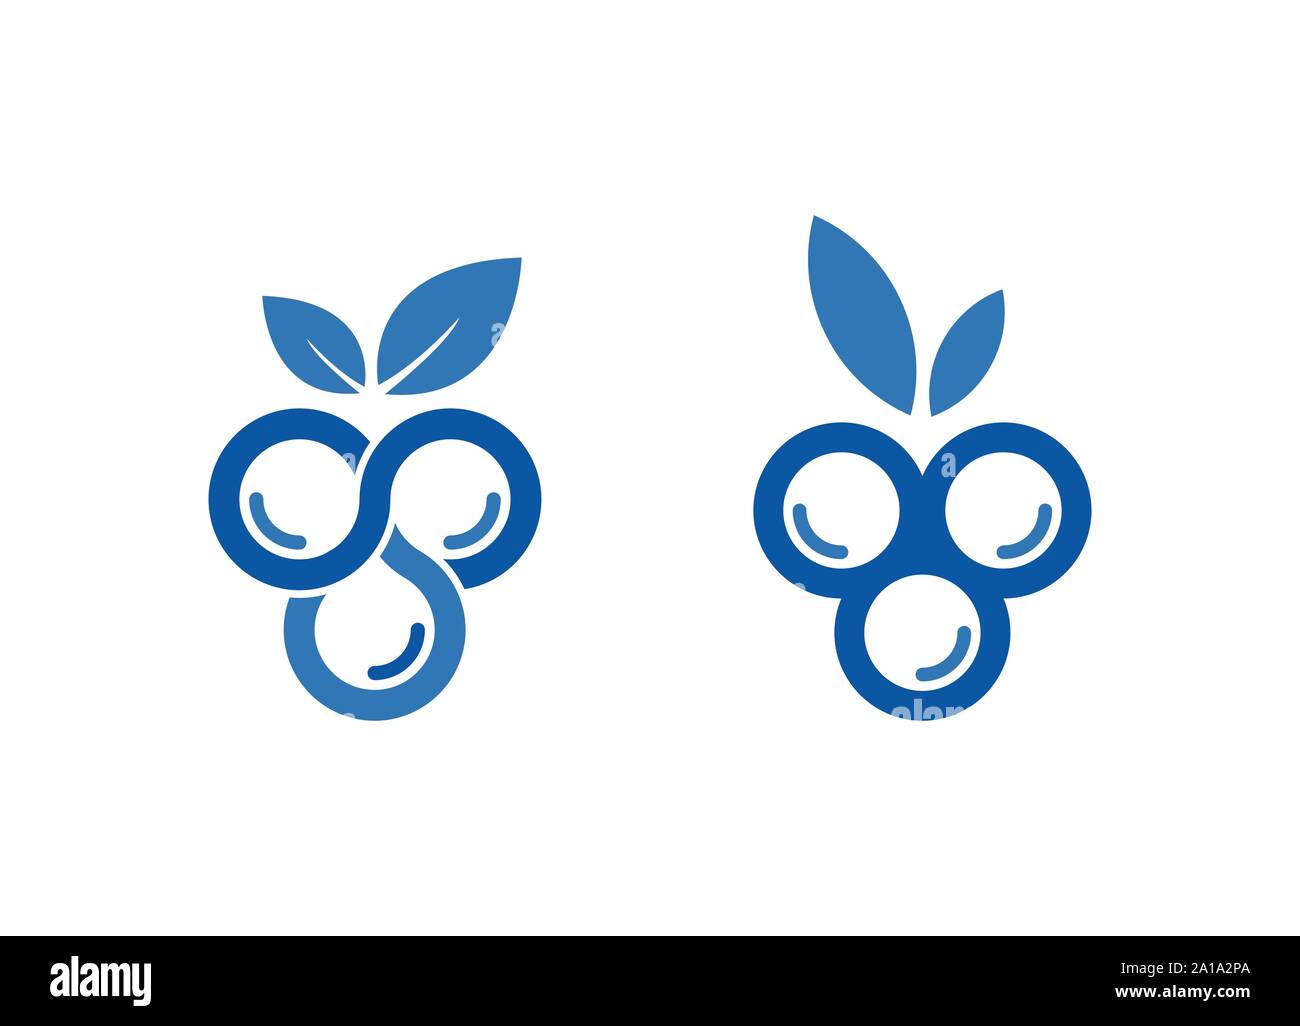 Blueberry logo template design, Blueberry Logo Images, Stock Photos & Vectors, Blueberry Logo design Stock Vector